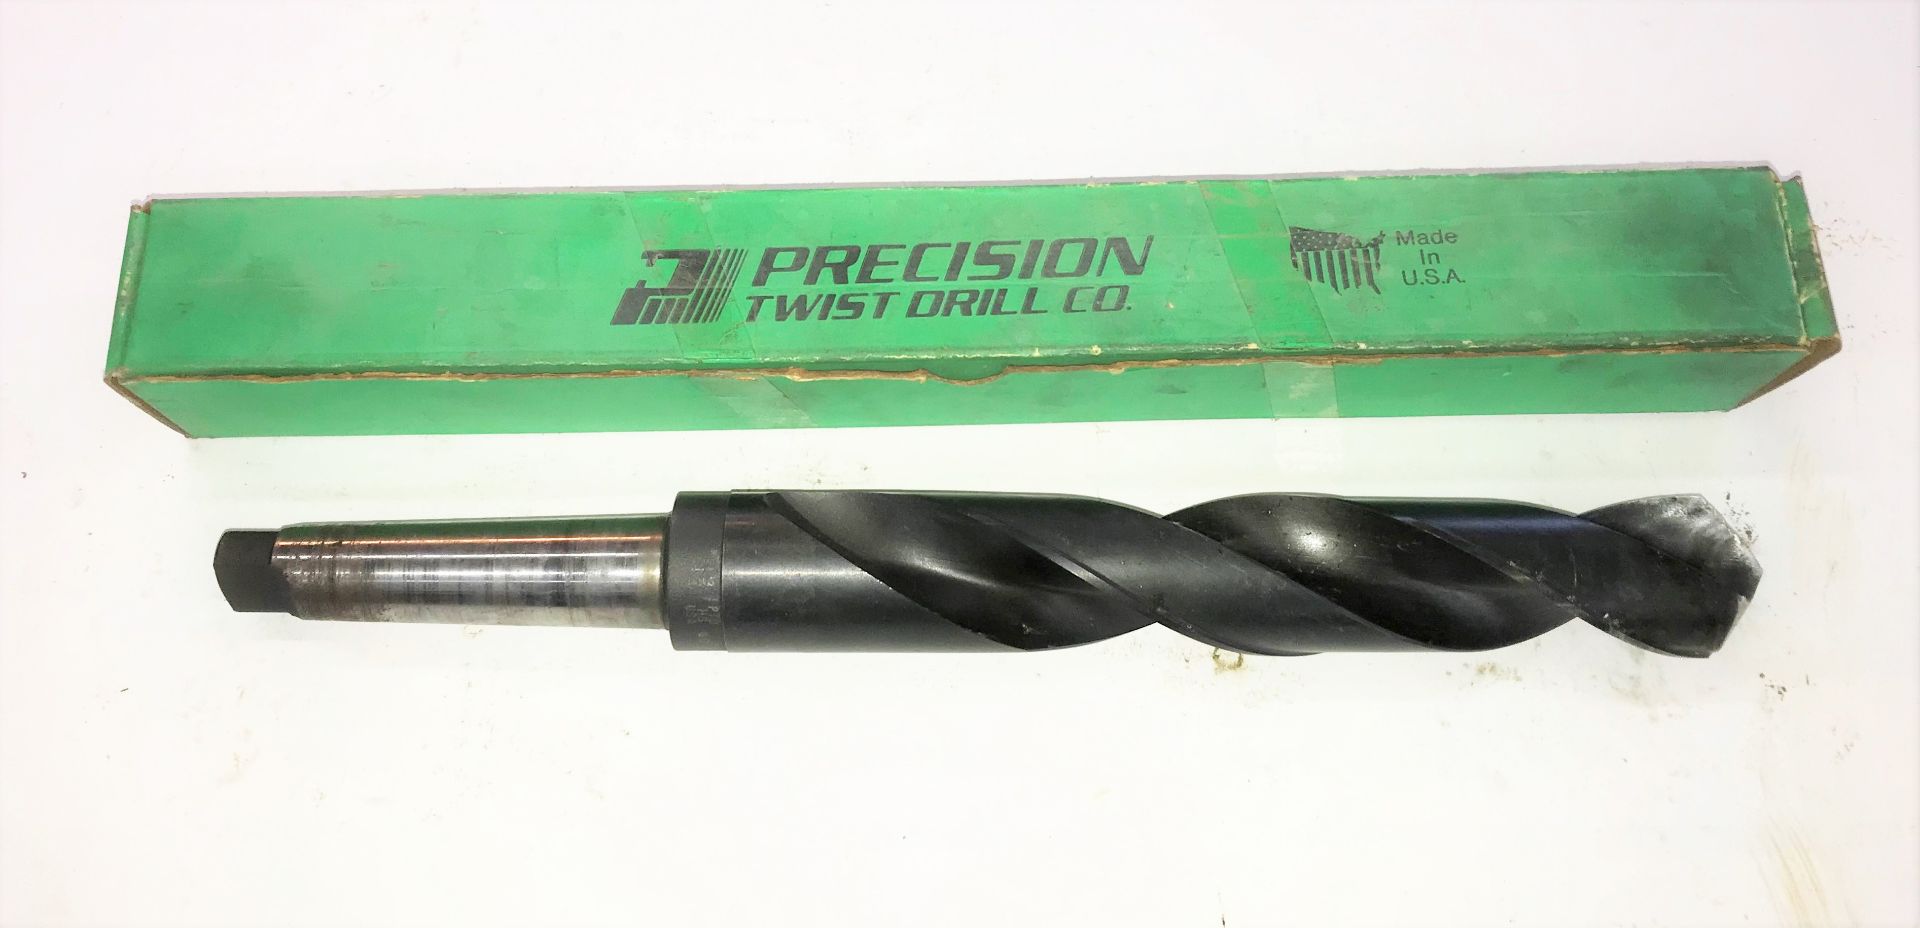 1-3/4" No.4MT Precision Twist Drill